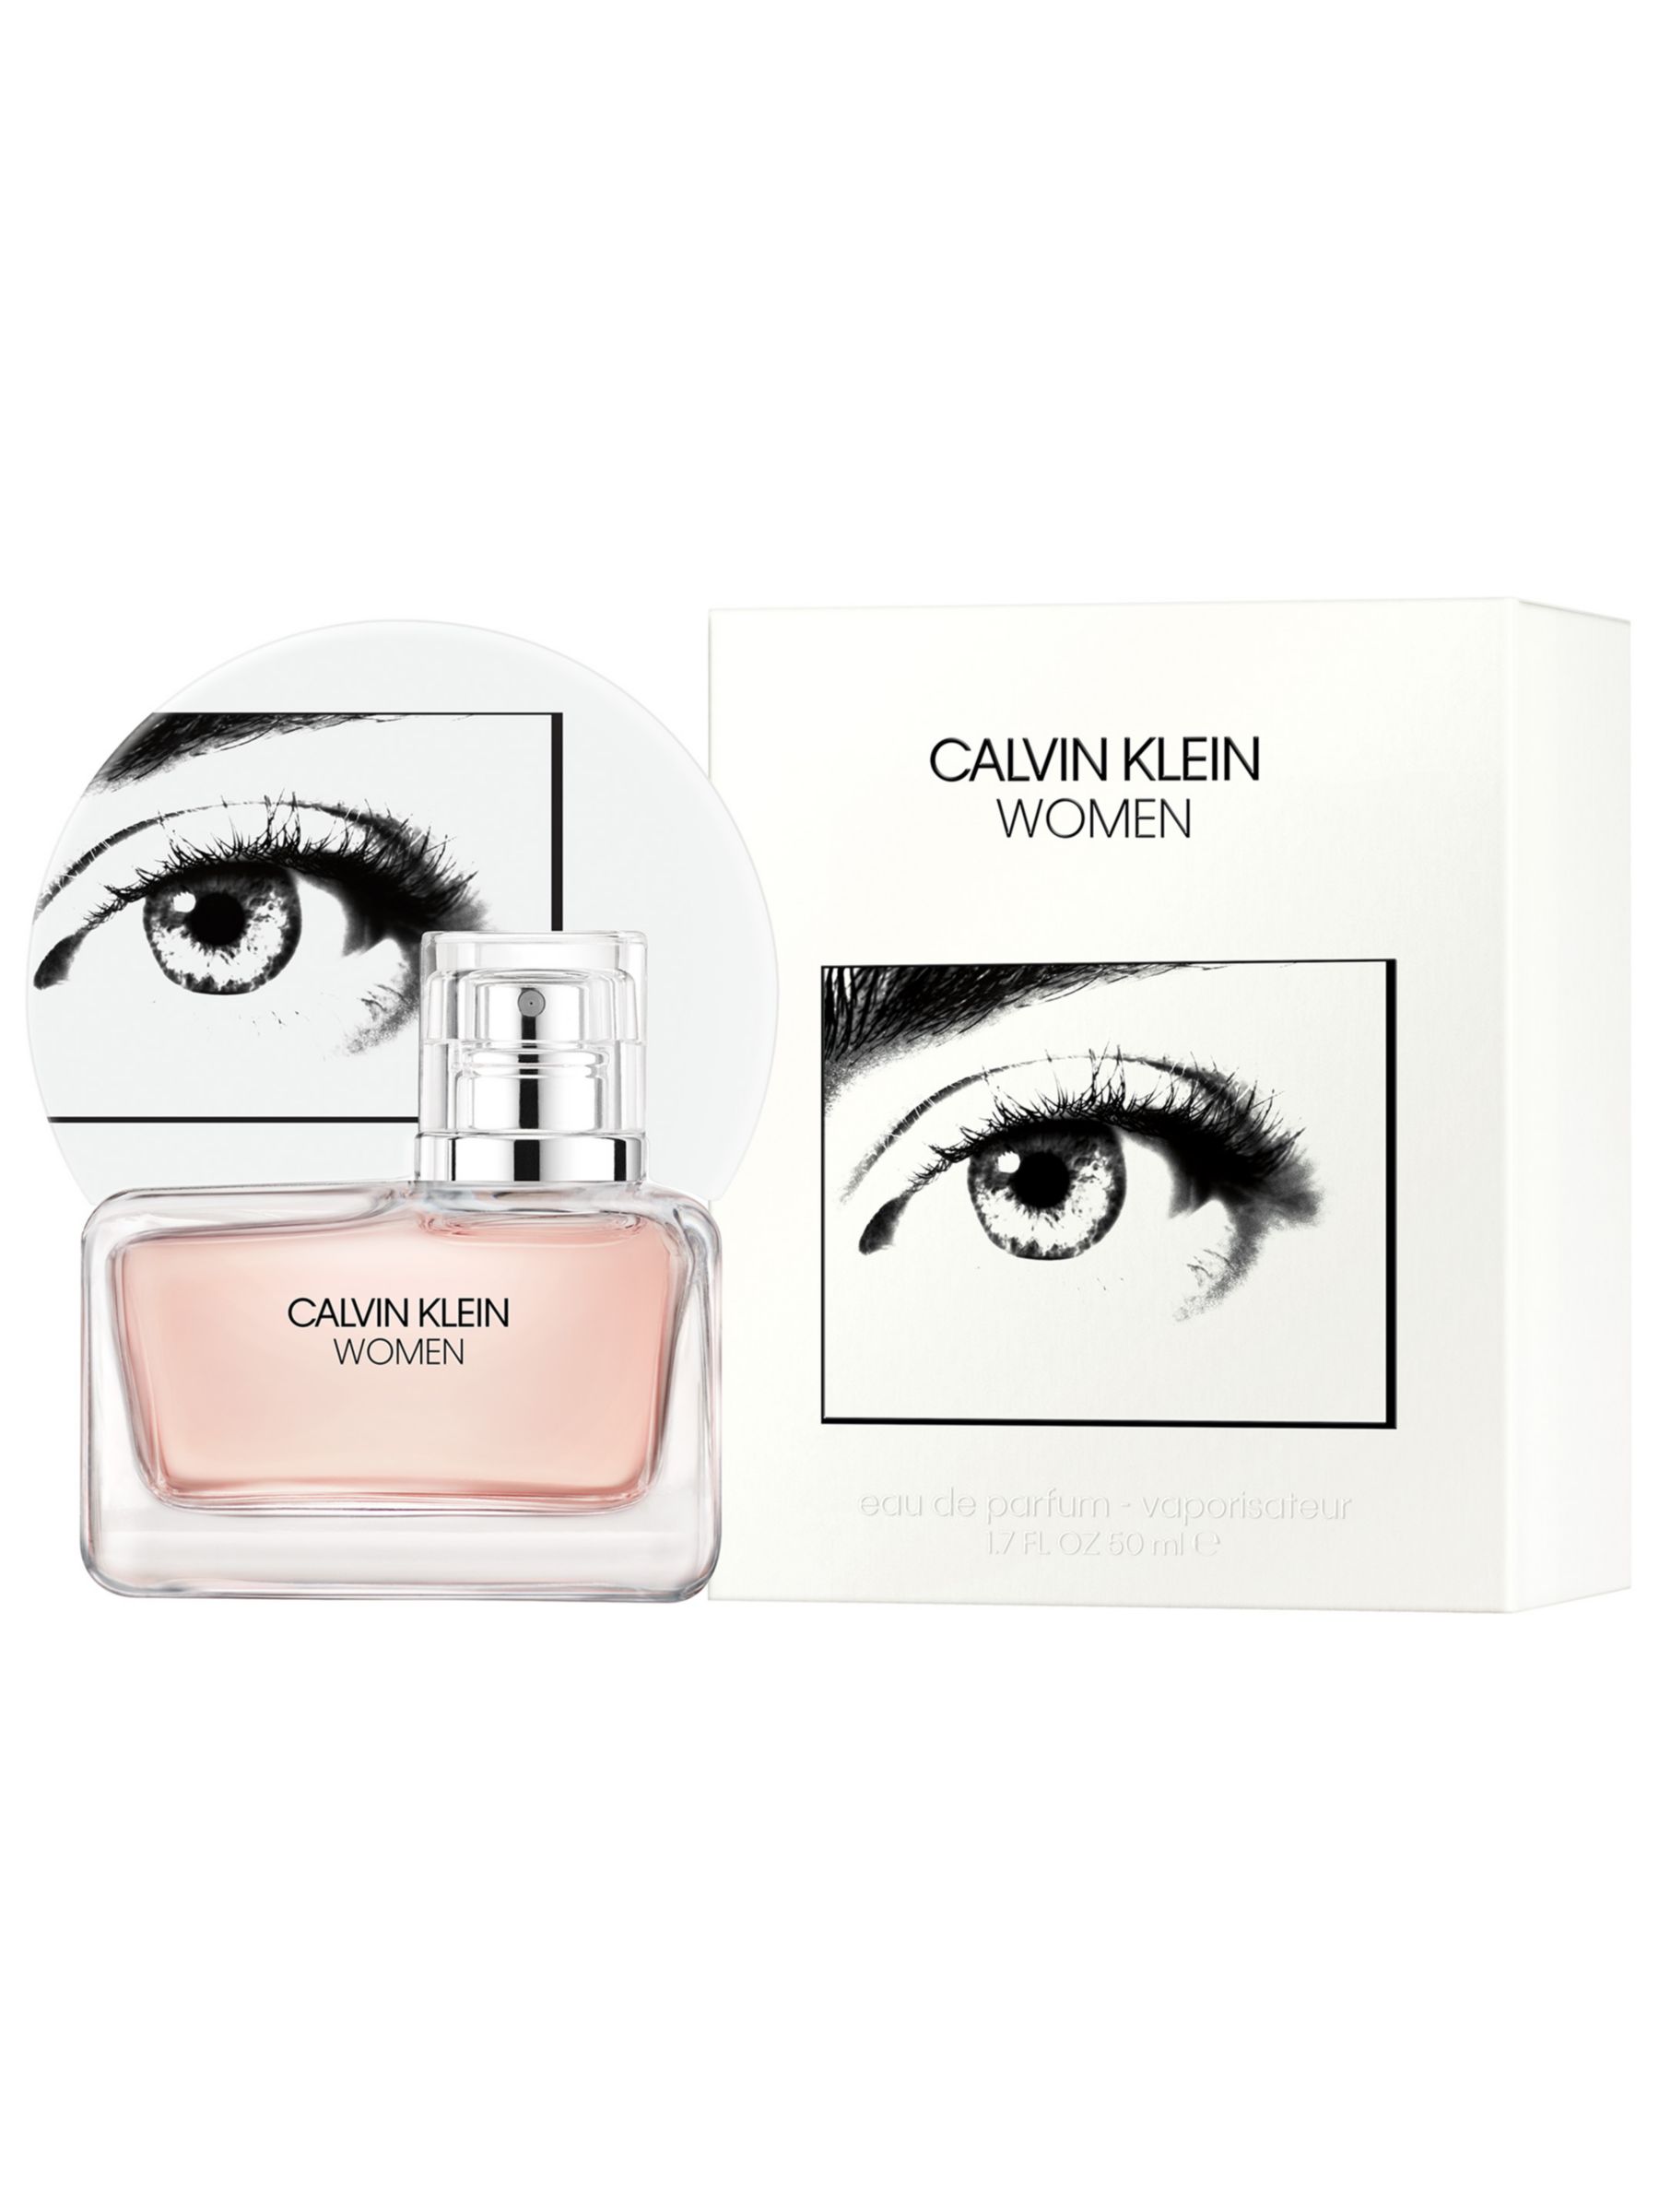 Calvin Klein Women Eau de Parfum, 30ml